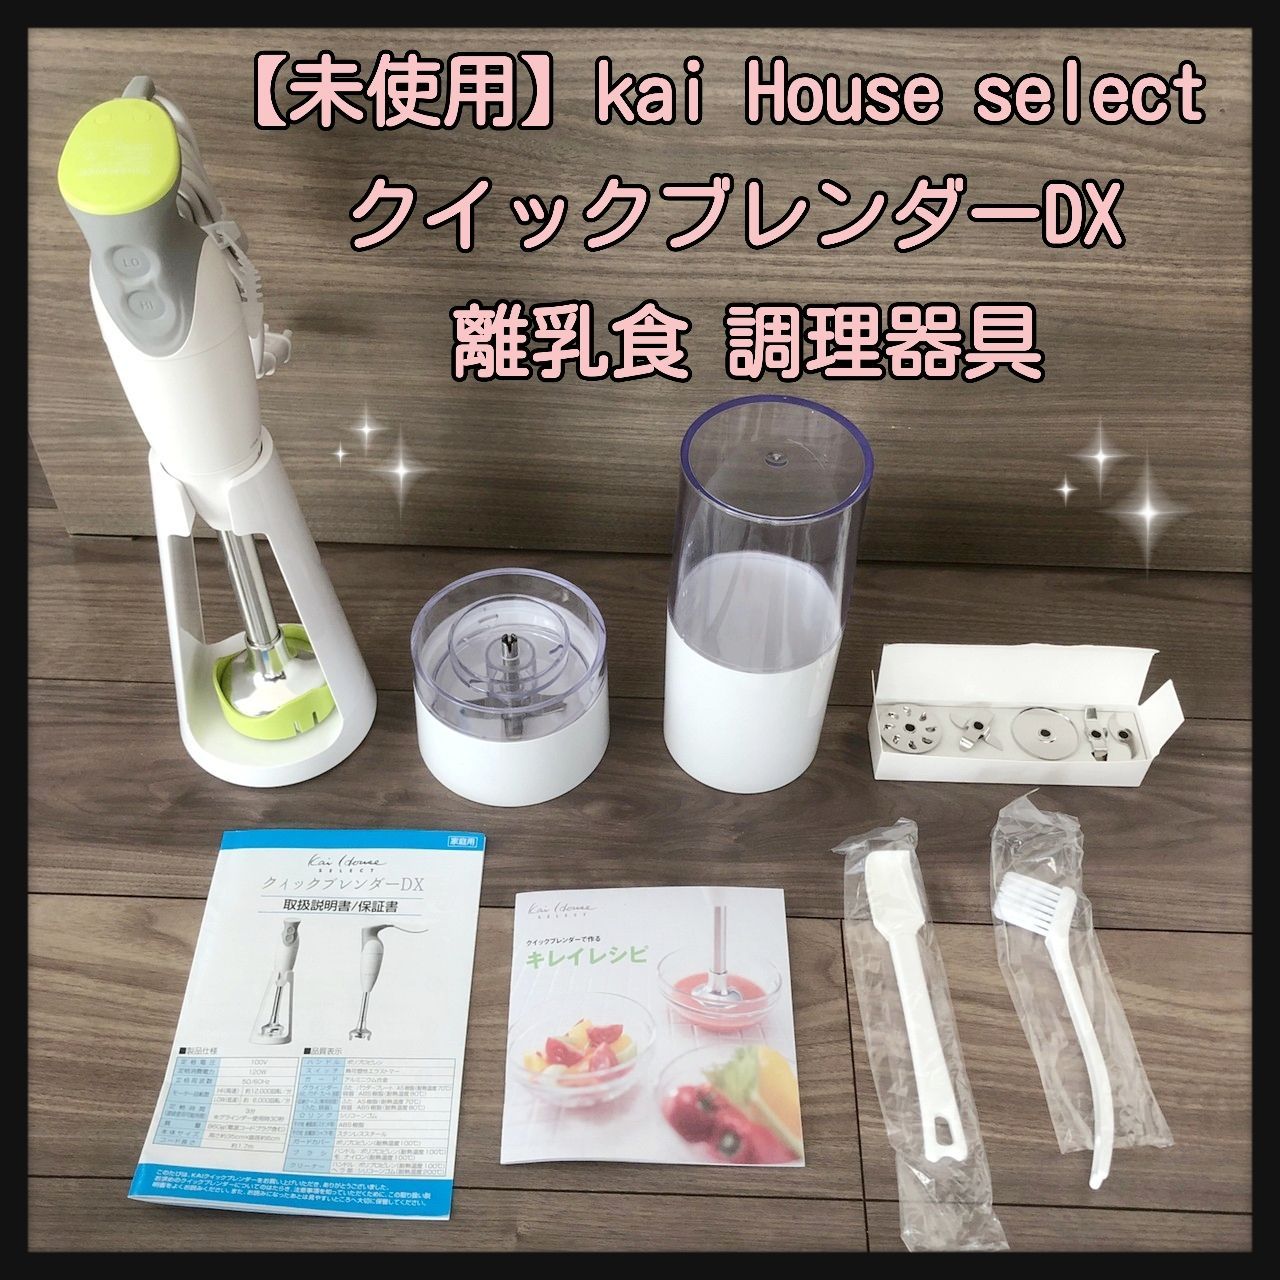 未使用】貝印 kai House select クイックブレンダーDX 離乳食 調理器具 hareiro【ハレイロ】 メルカリ